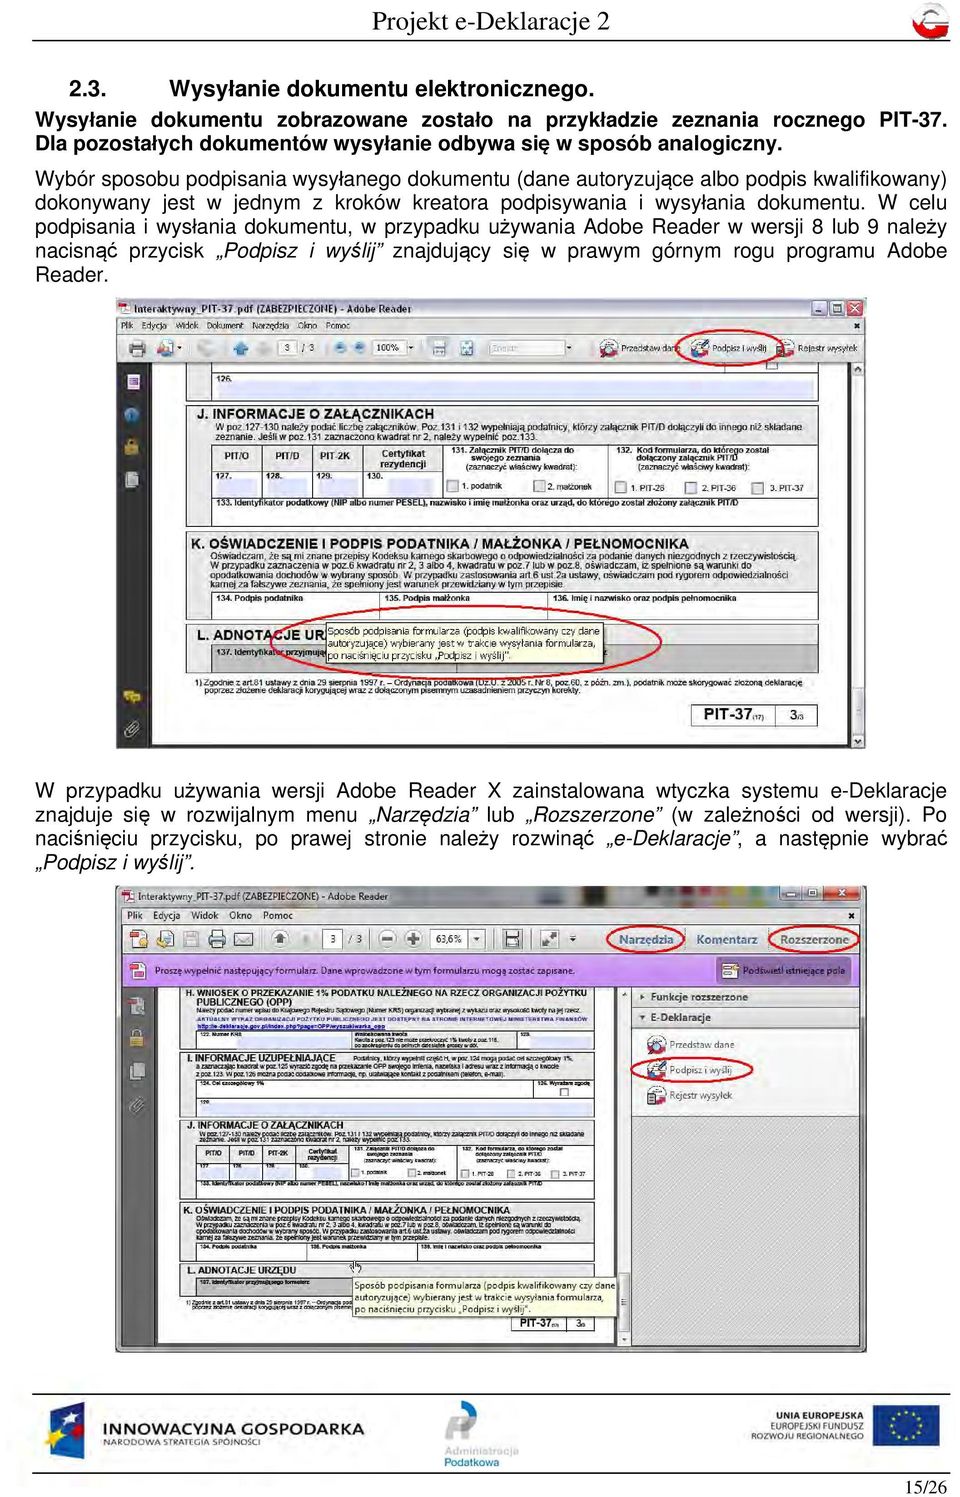 W celu podpisania i wysłania dokumentu, w przypadku używania Adobe Reader w wersji 8 lub 9 należy nacisnąć przycisk Podpisz i wyślij znajdujący się w prawym górnym rogu programu Adobe Reader.